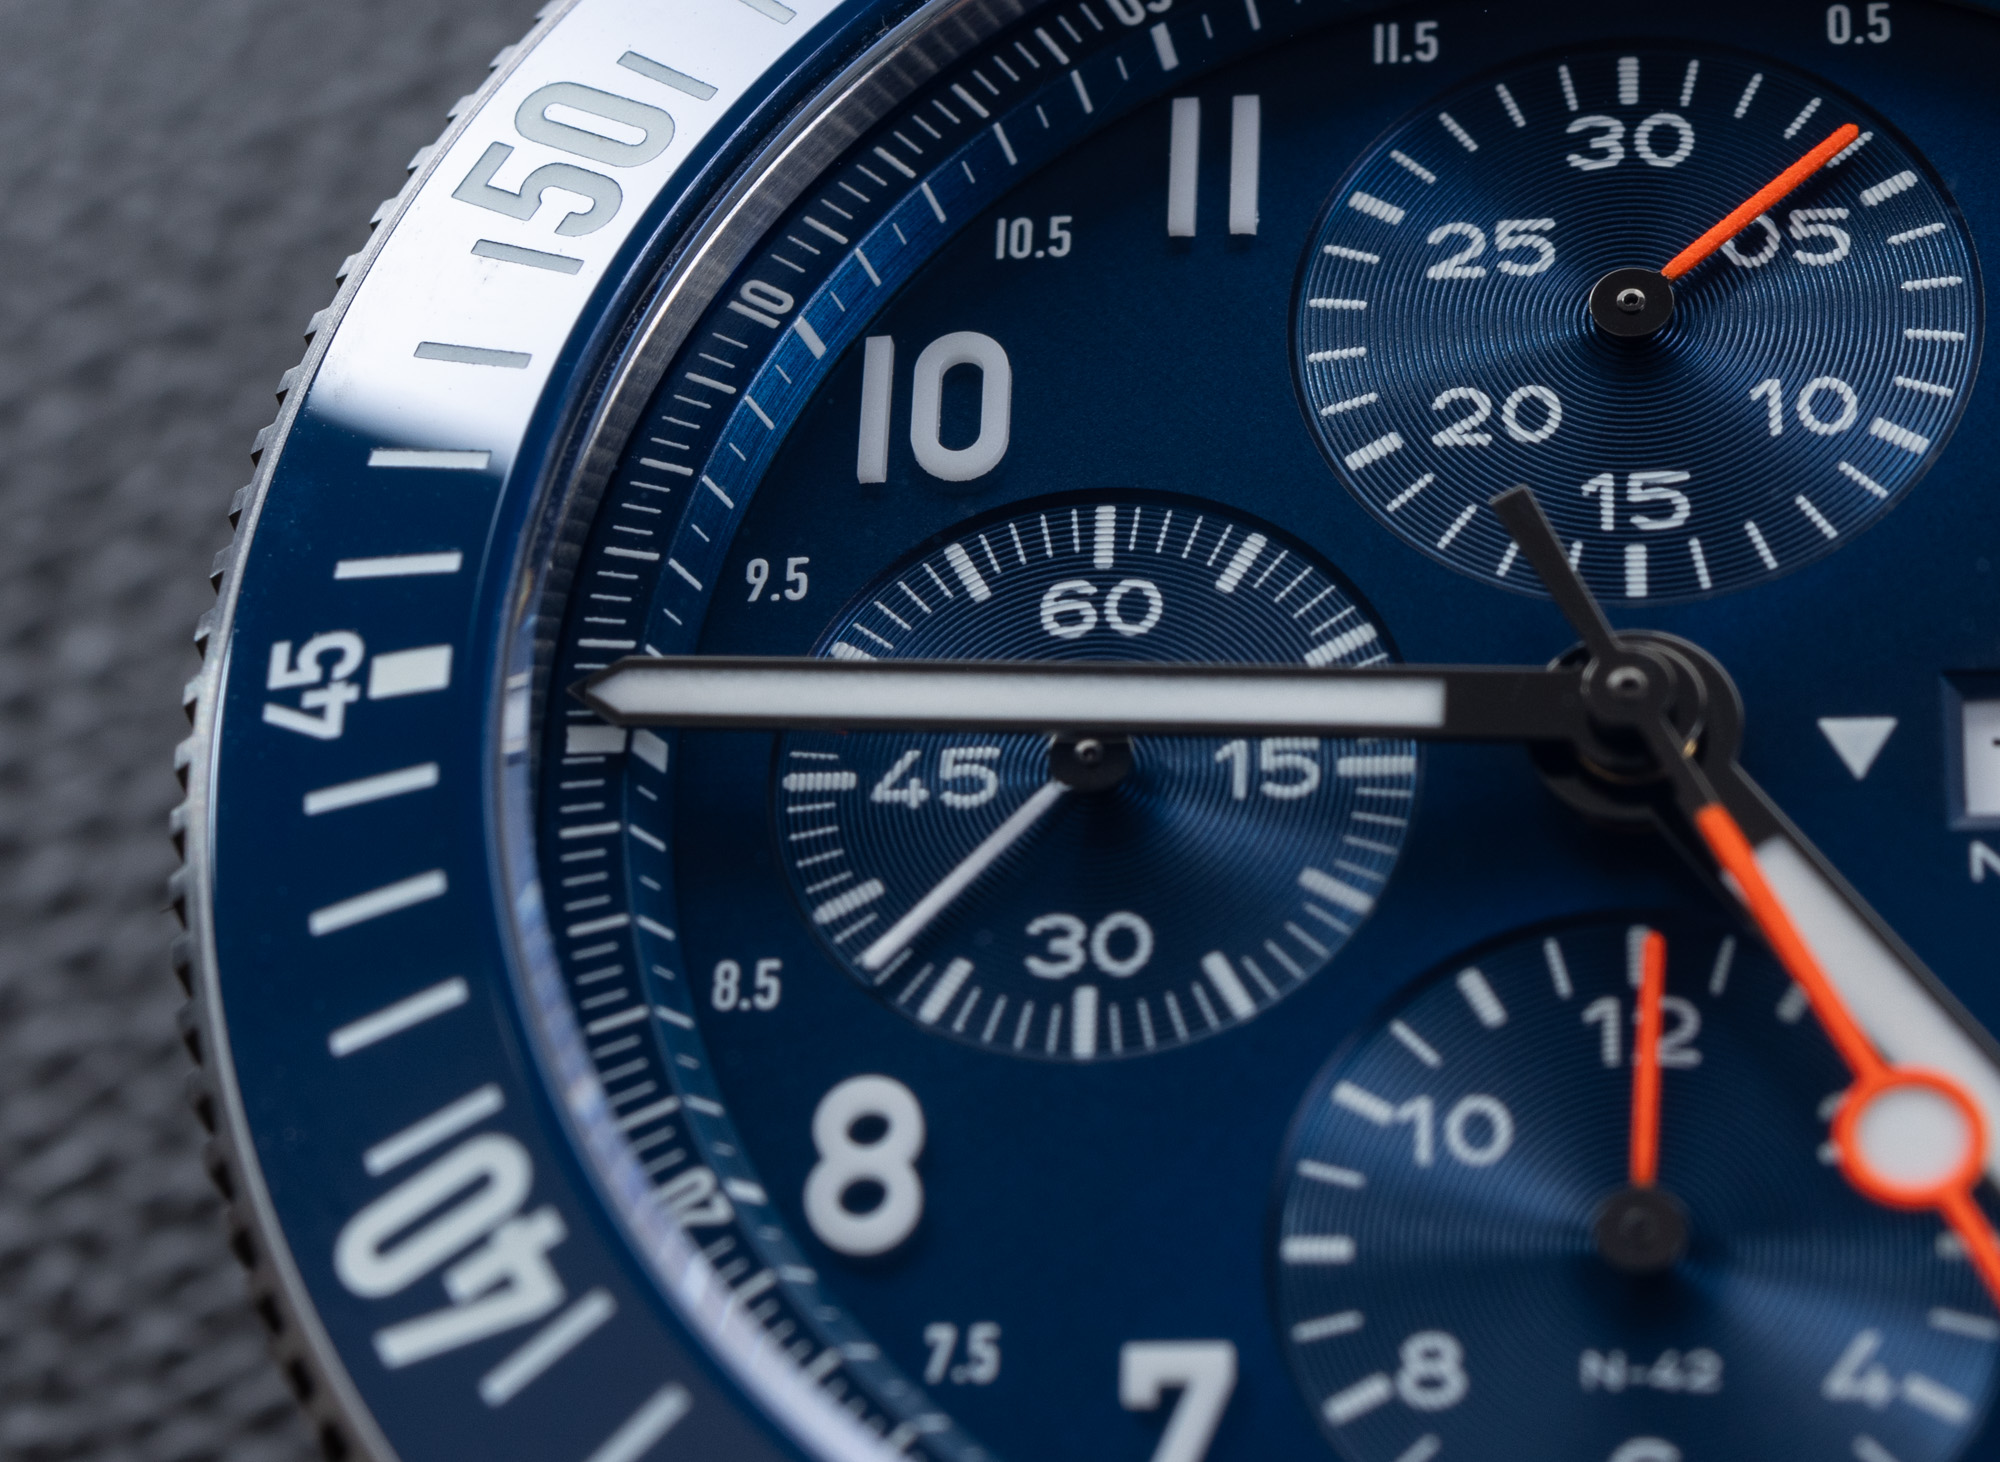 Обзор часов: Fortis Novonaut N-42 Cobalt Blue Edition